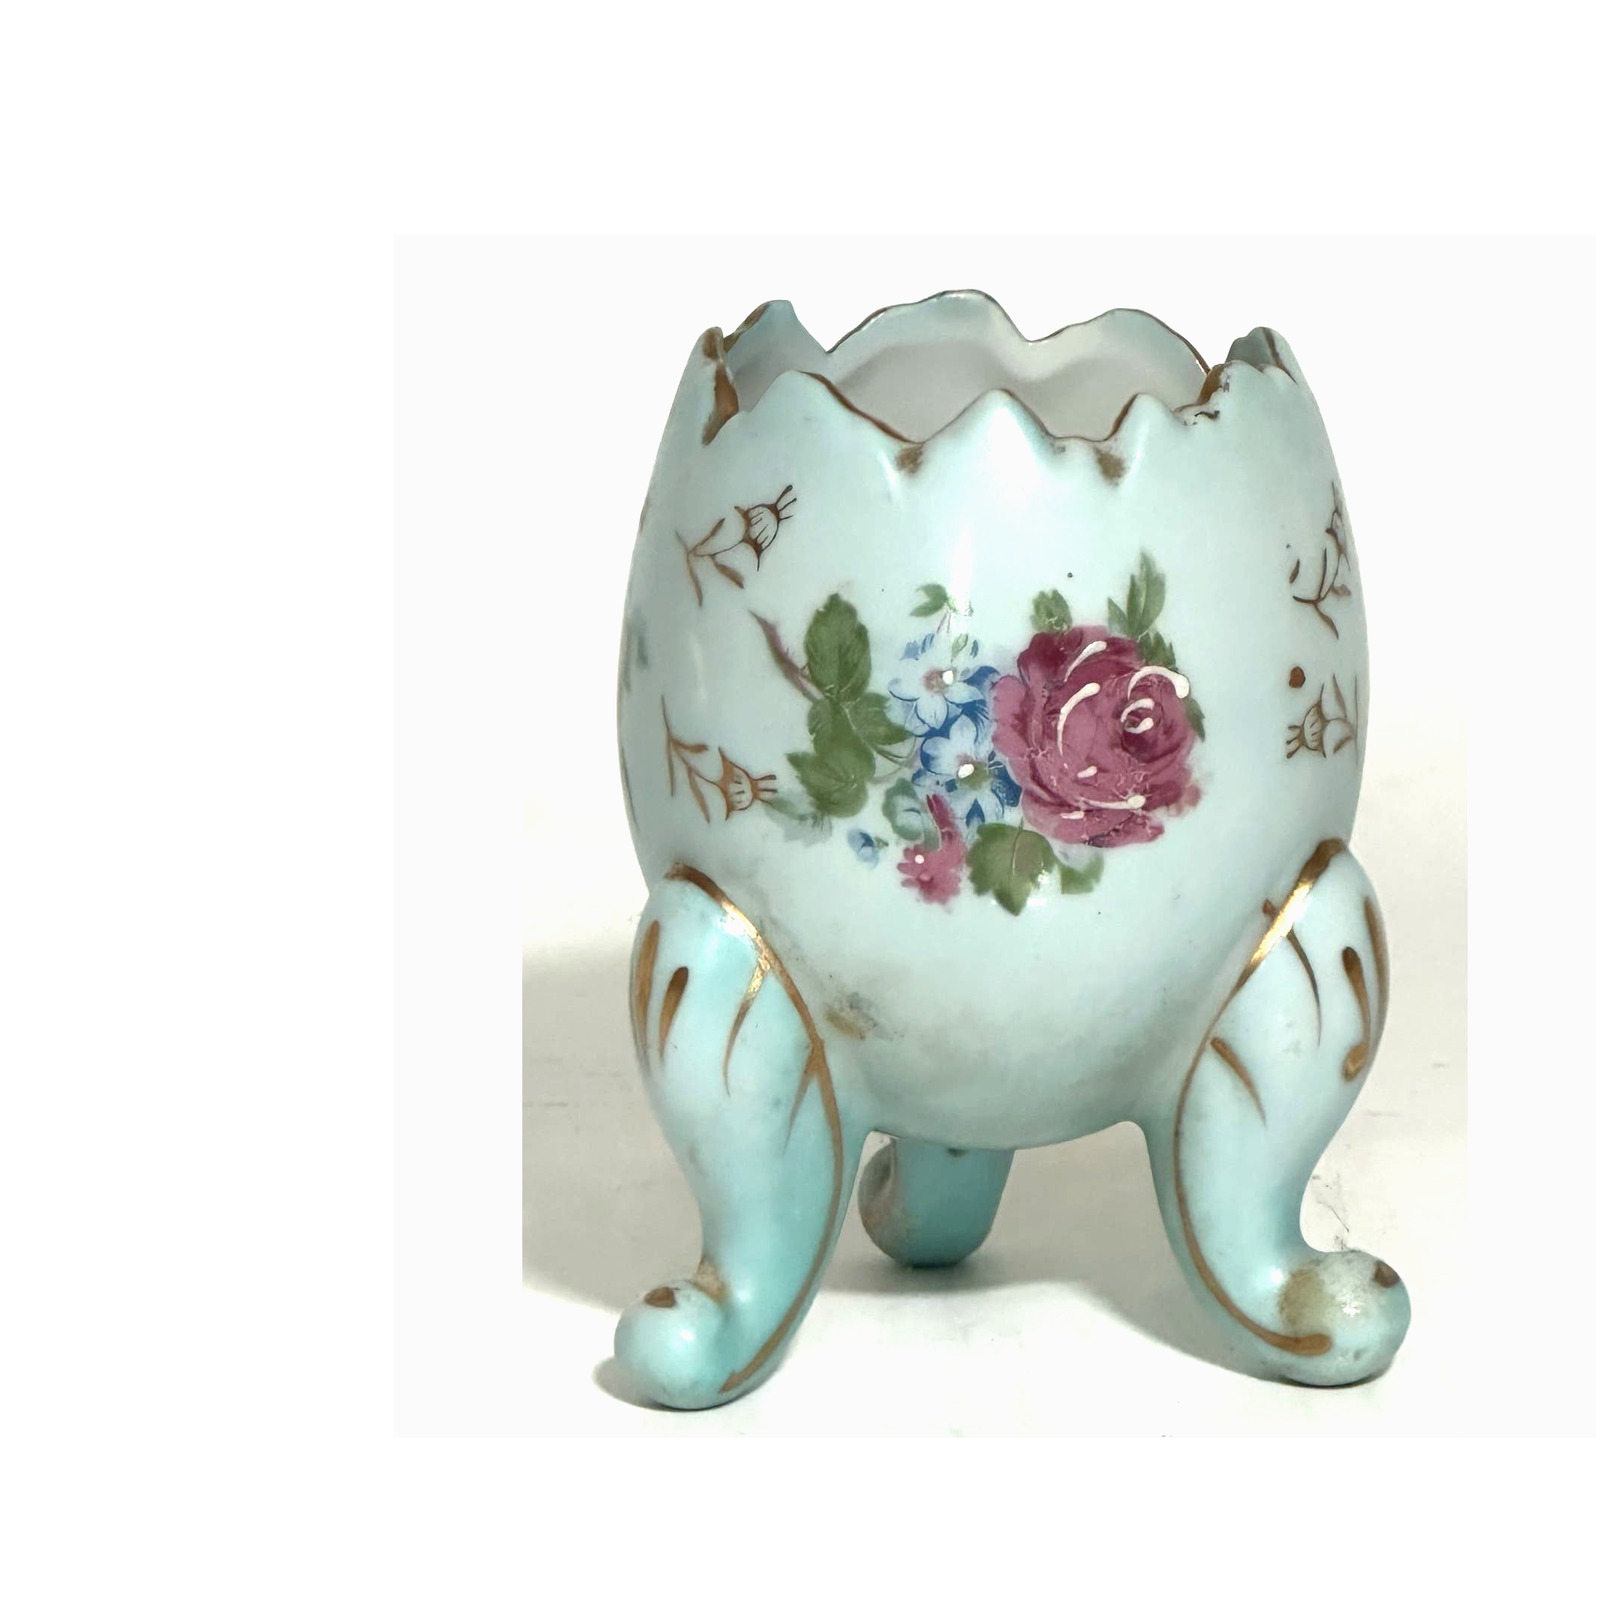 Vintage Napco Cracked Egg Rose-Patterned Ceramic Vase